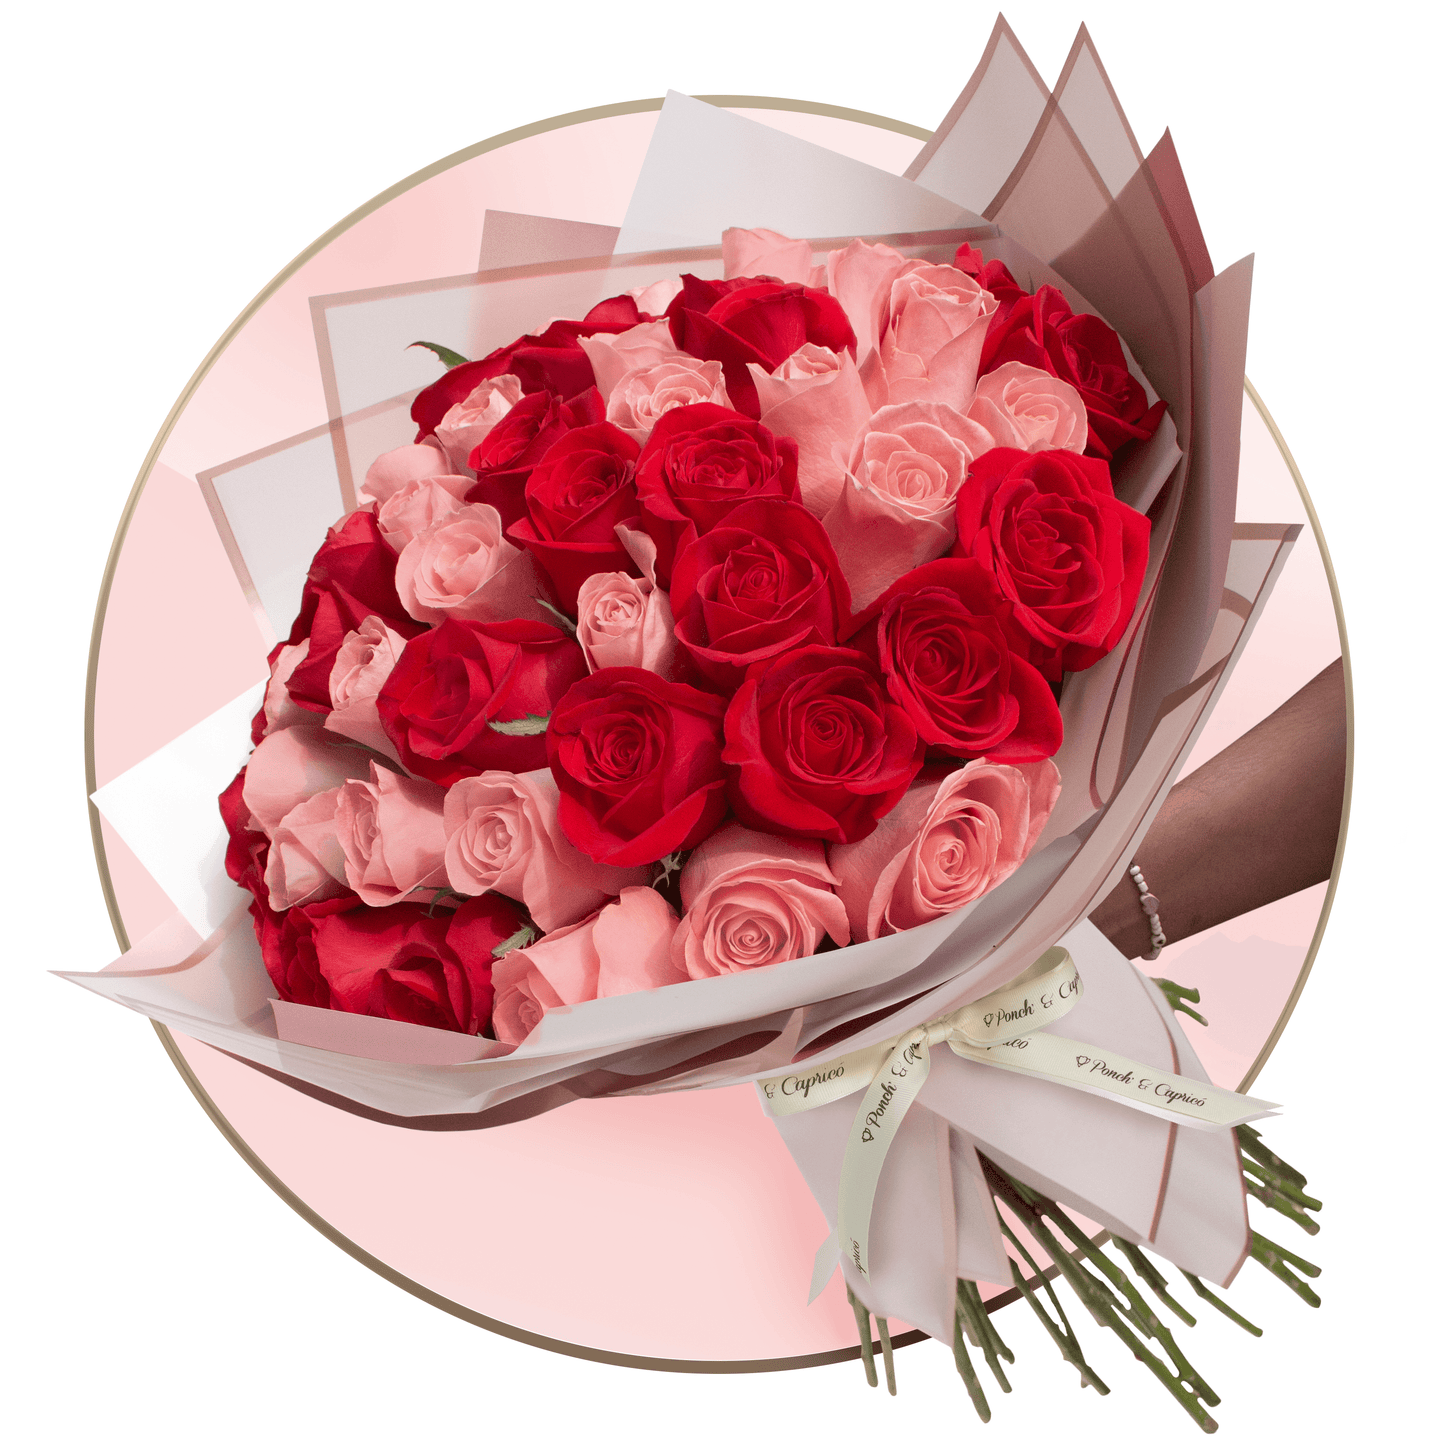 Hermoso atado de rosas rojas y rosadas, hecho a mano, y envuelto en delicados papeles con moño de tela y tarjeta personalizada.  Elige entre 50 (foto), 100 o 150 rosas.